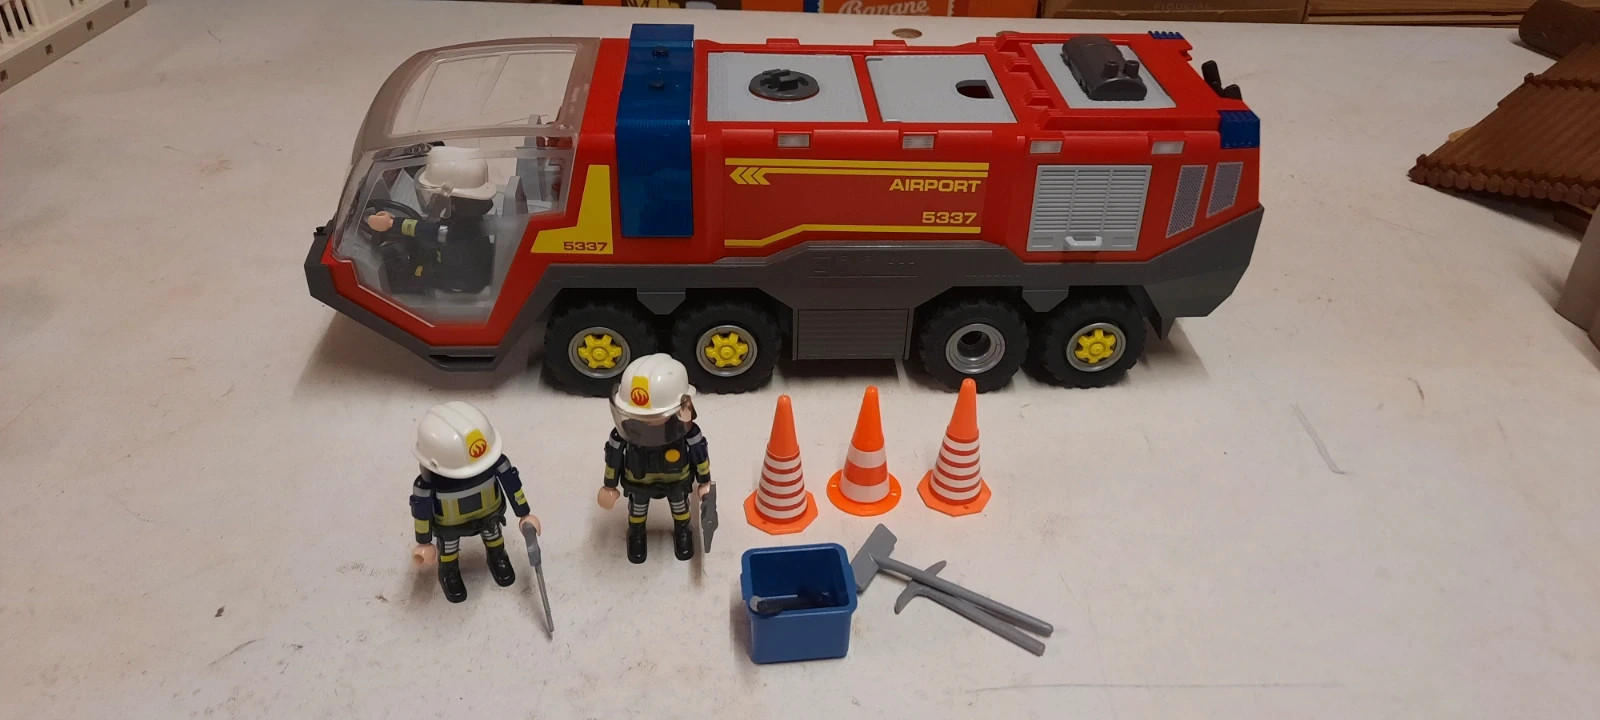 5337 playmobil pompiers avec véhicule aéroportuaire 5337 - Conforama